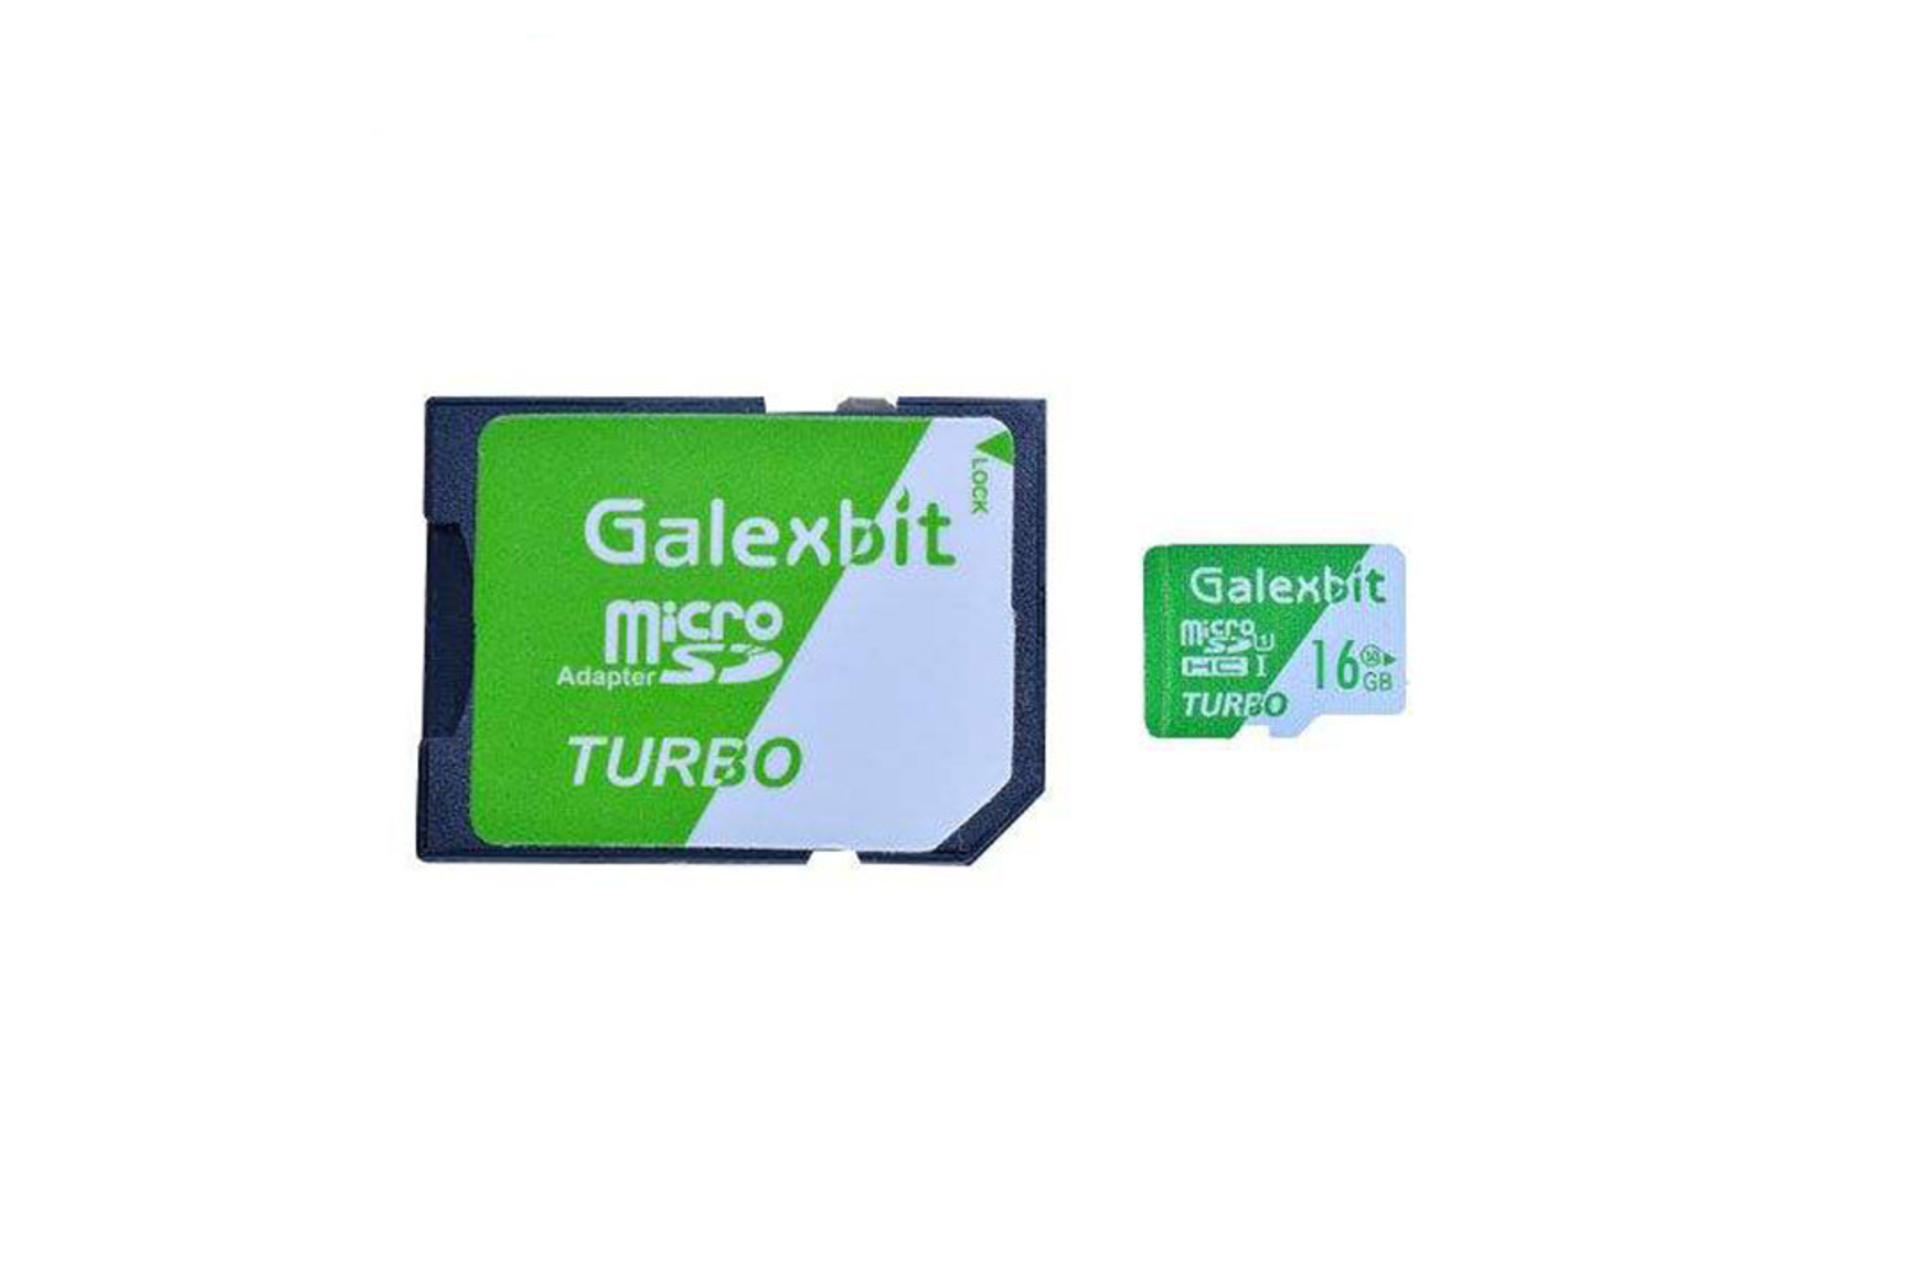 Galaxbit Turbo microSDHC Class 10 UHS-I U1 16GB